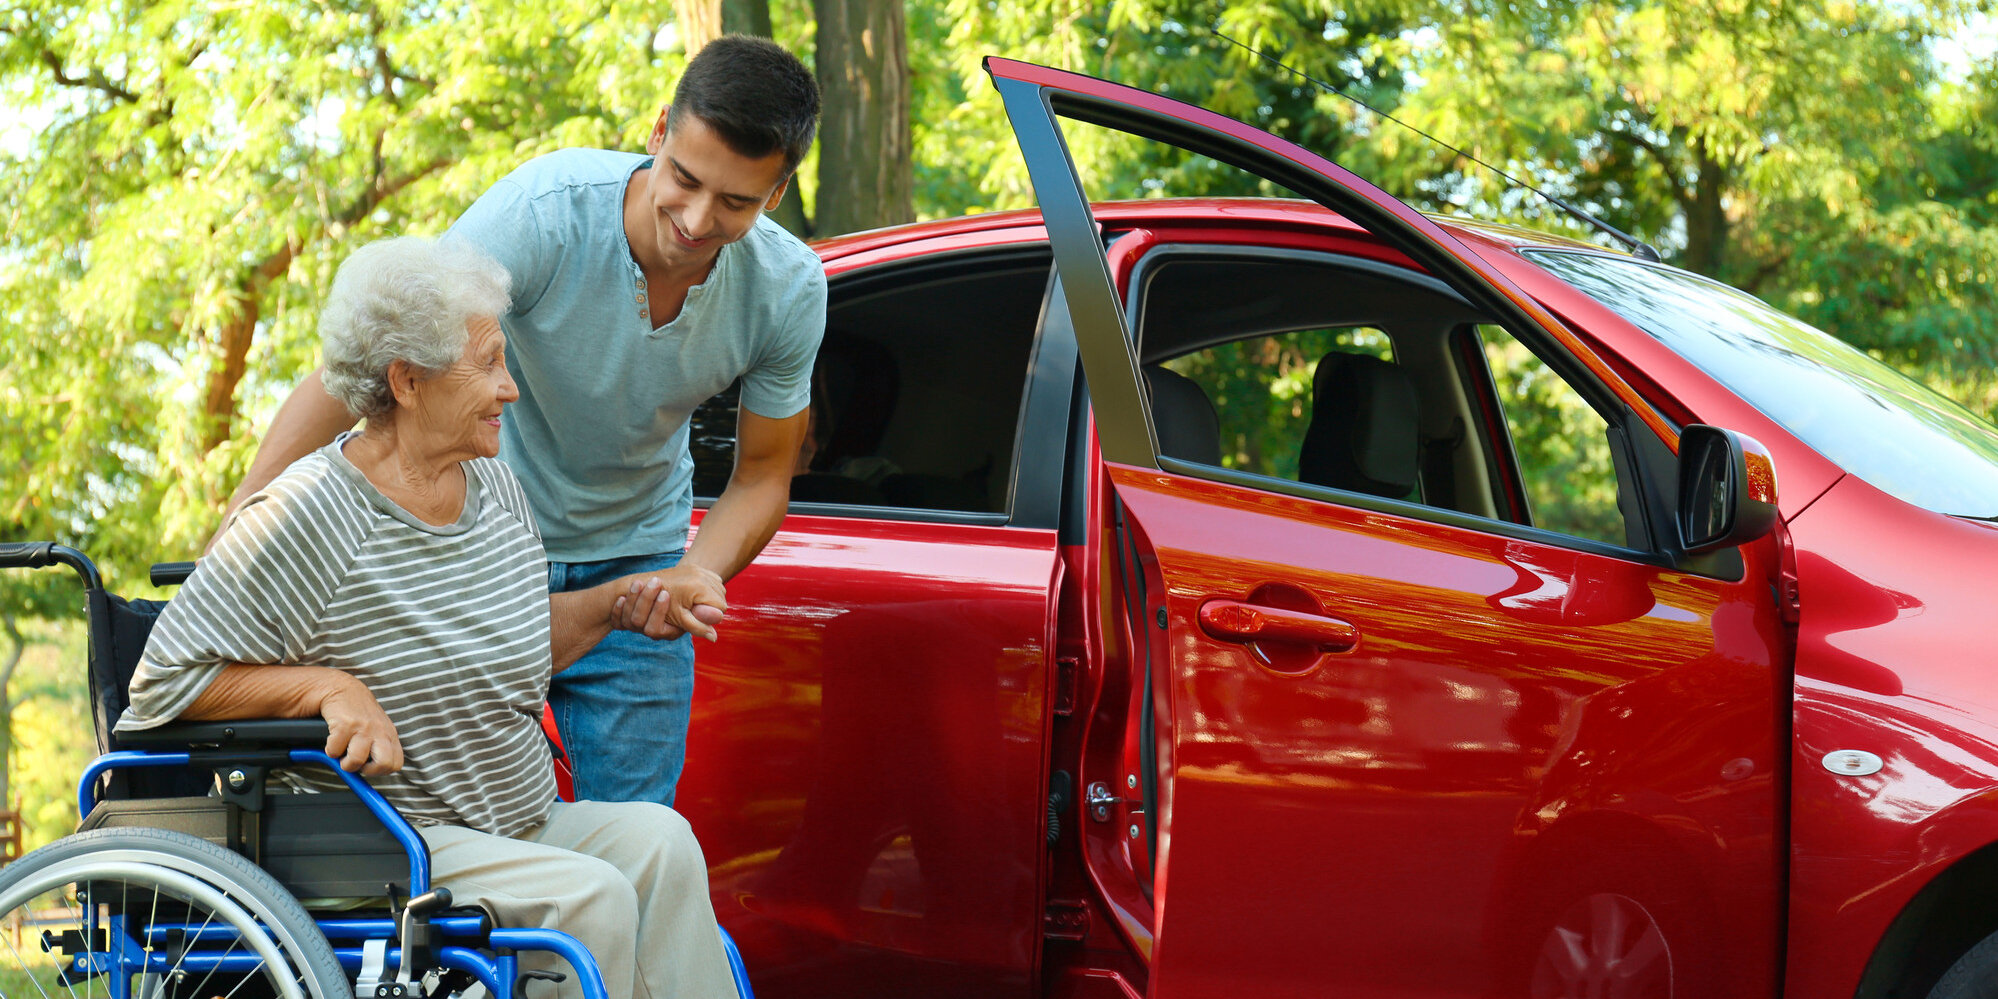 Ein junger Mann hilft einer älteren Frau aus dem Rollstuhl auf den Beifahrersitz eines roten Autos.